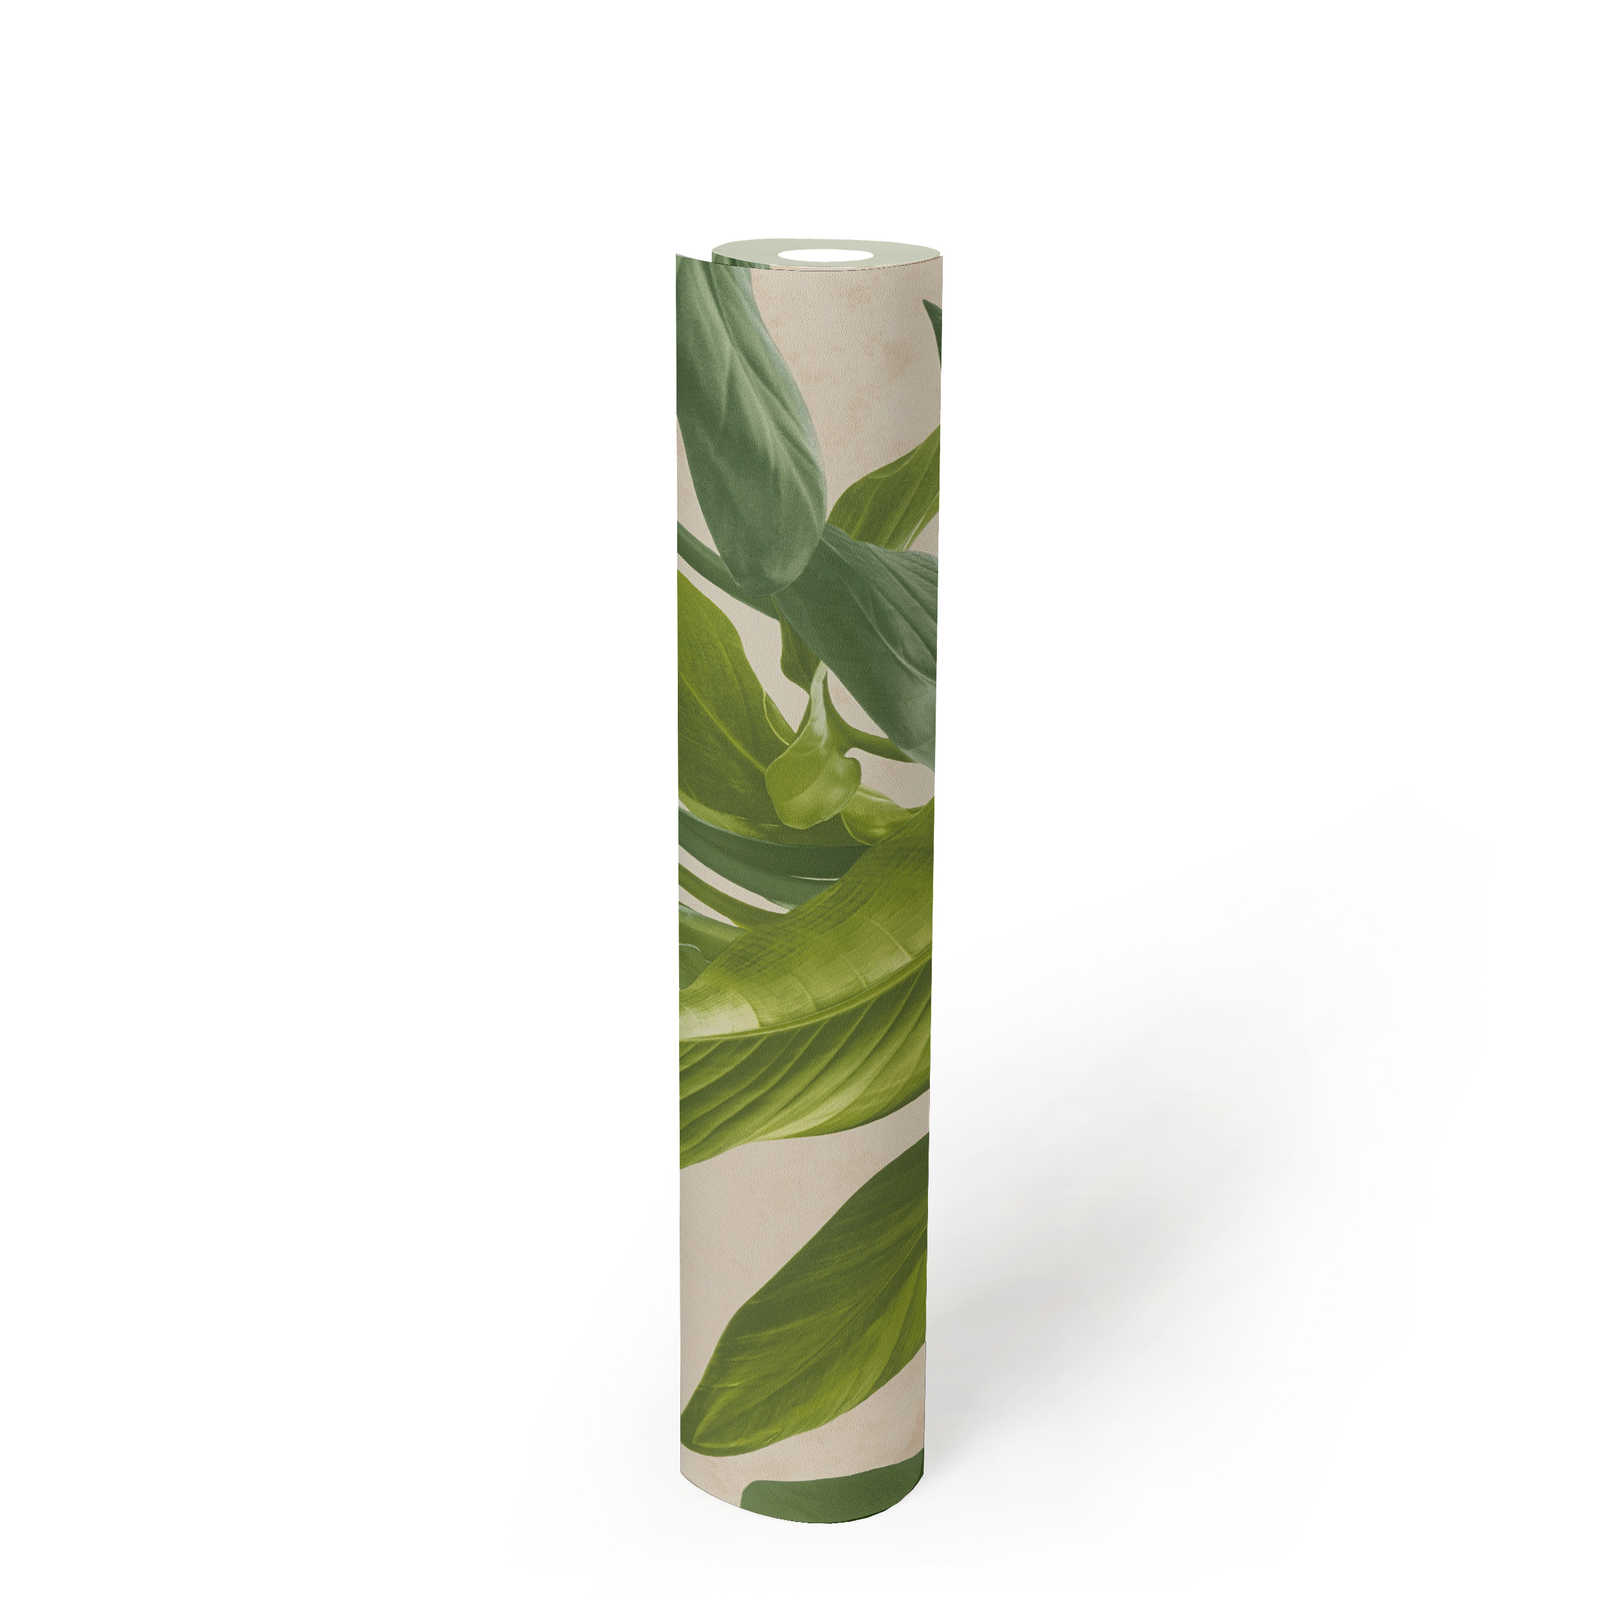             Vliestapete mit modernem Blätter-Design – Creme, Grün
        